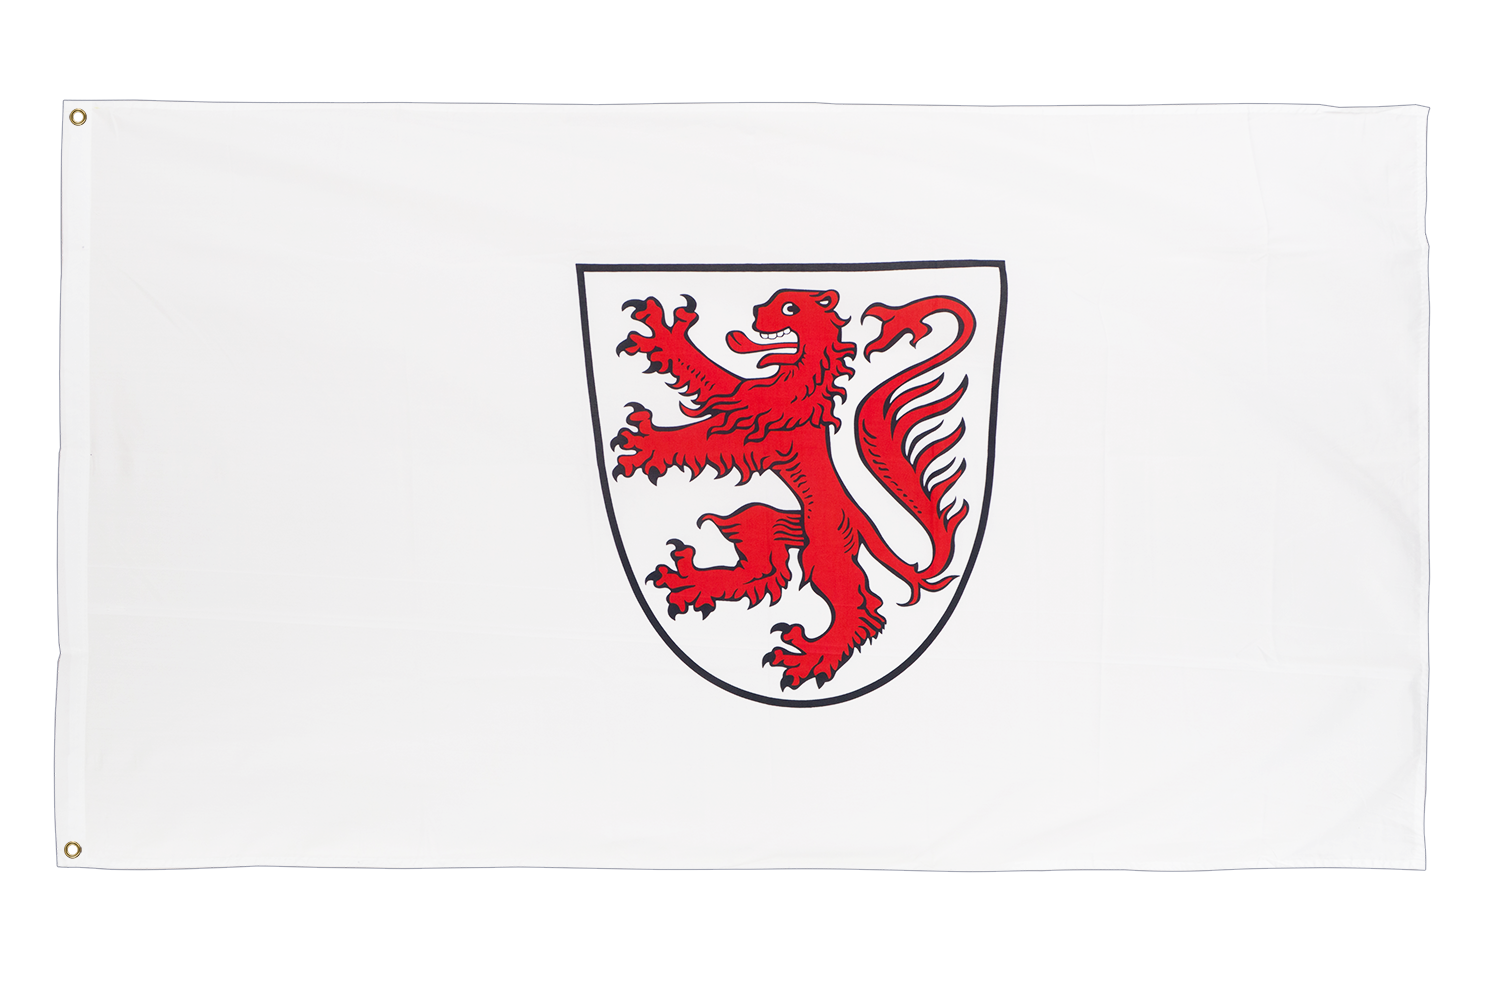 Fahne Braunschweig Fan Mein Verein Hissflagge 90 x 150 cm Flagge 